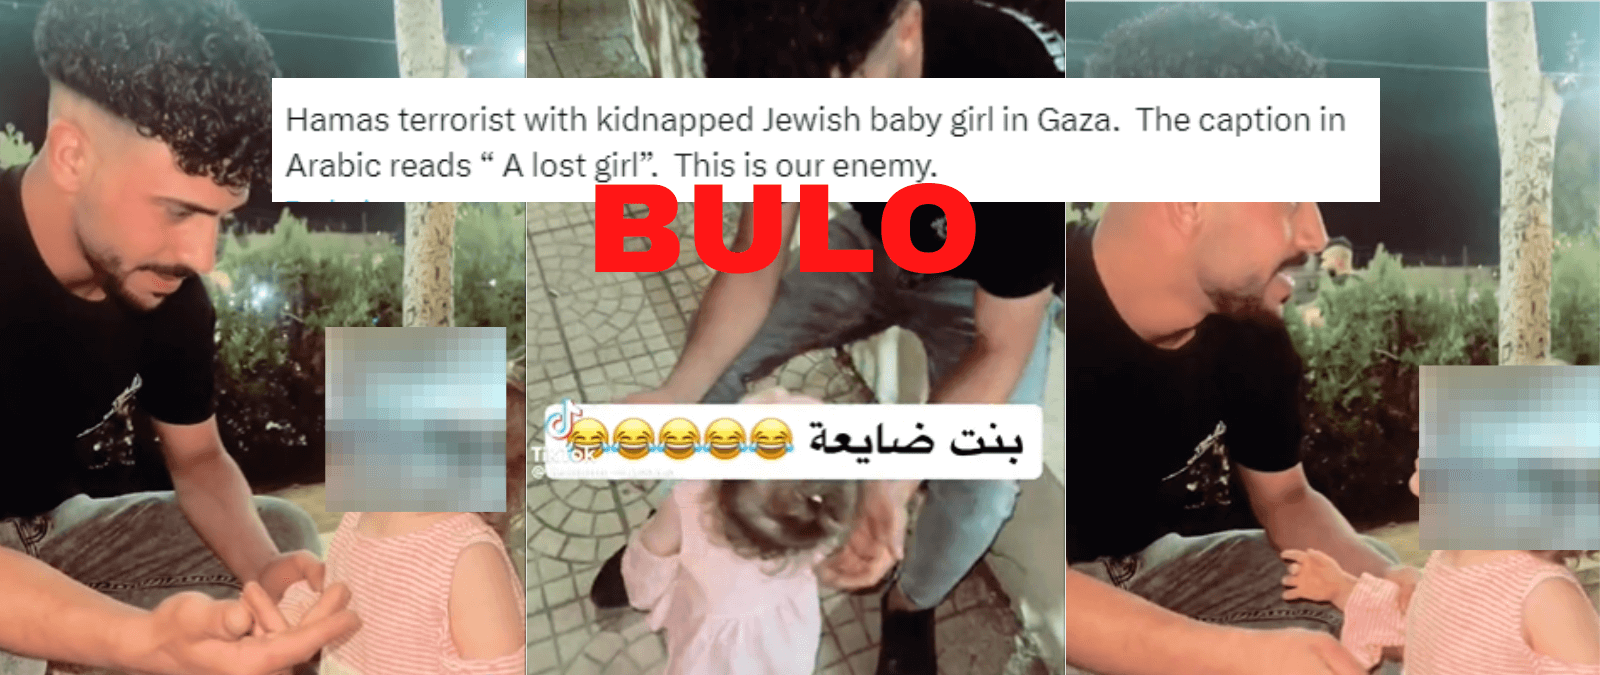 No, este vídeo de un supuesto “terrorista de Hamás” que ha “secuestrado” a una niña no es del actual ataque de Hamás: se difunde desde septiembre de 2023